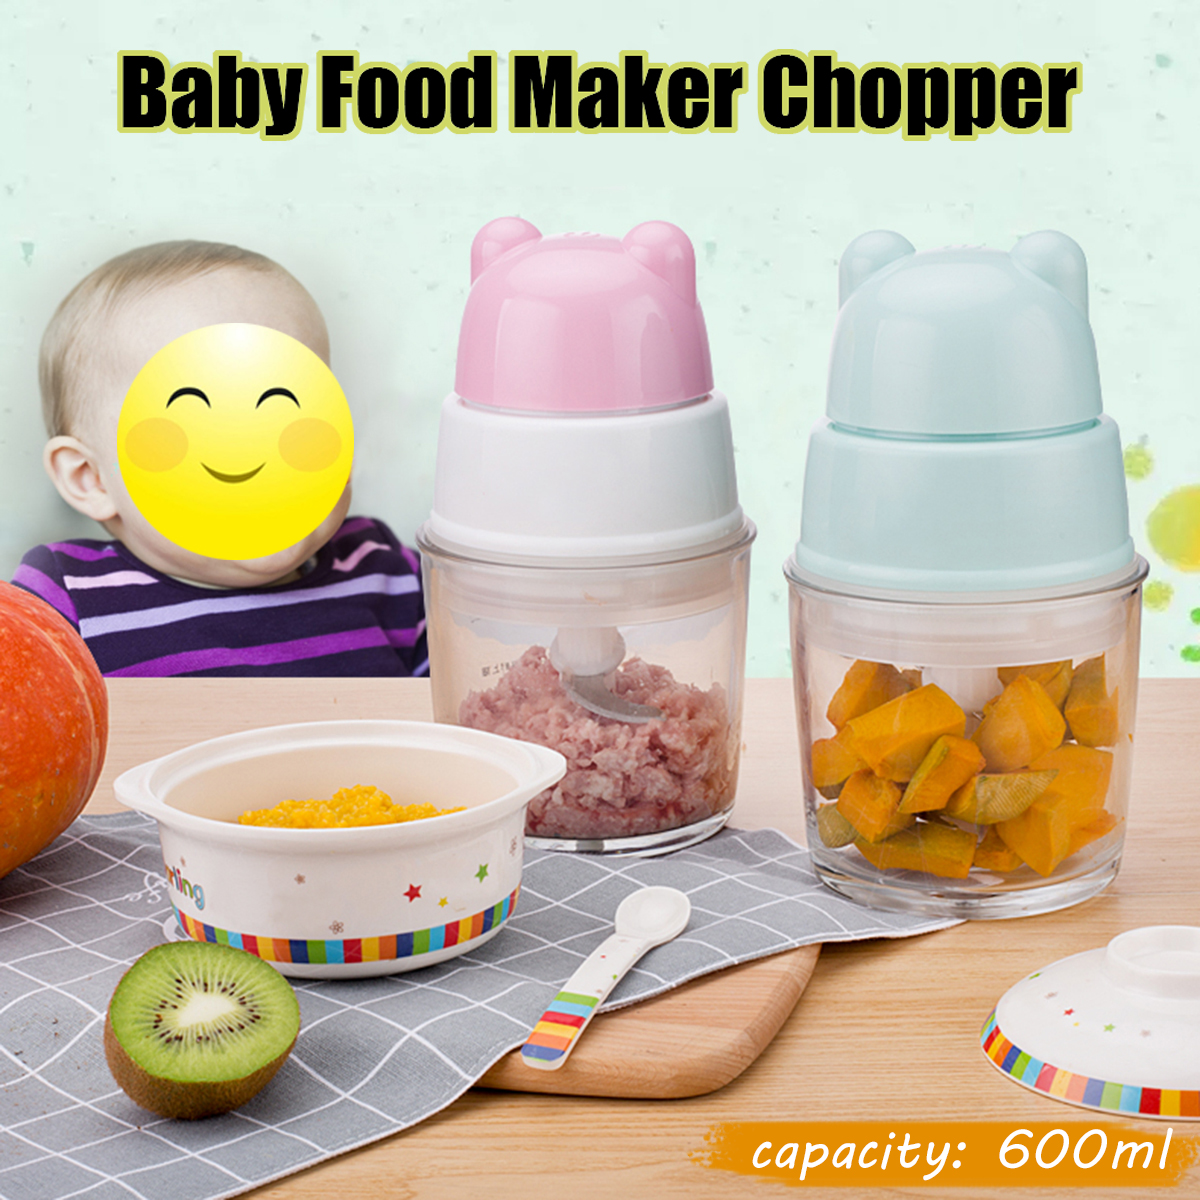 Baby-Food-Maker-Electric-Chopper-Vegetable-Fruit-Meat-Mixer-Grinder-Blender-Slicer-1445900-1